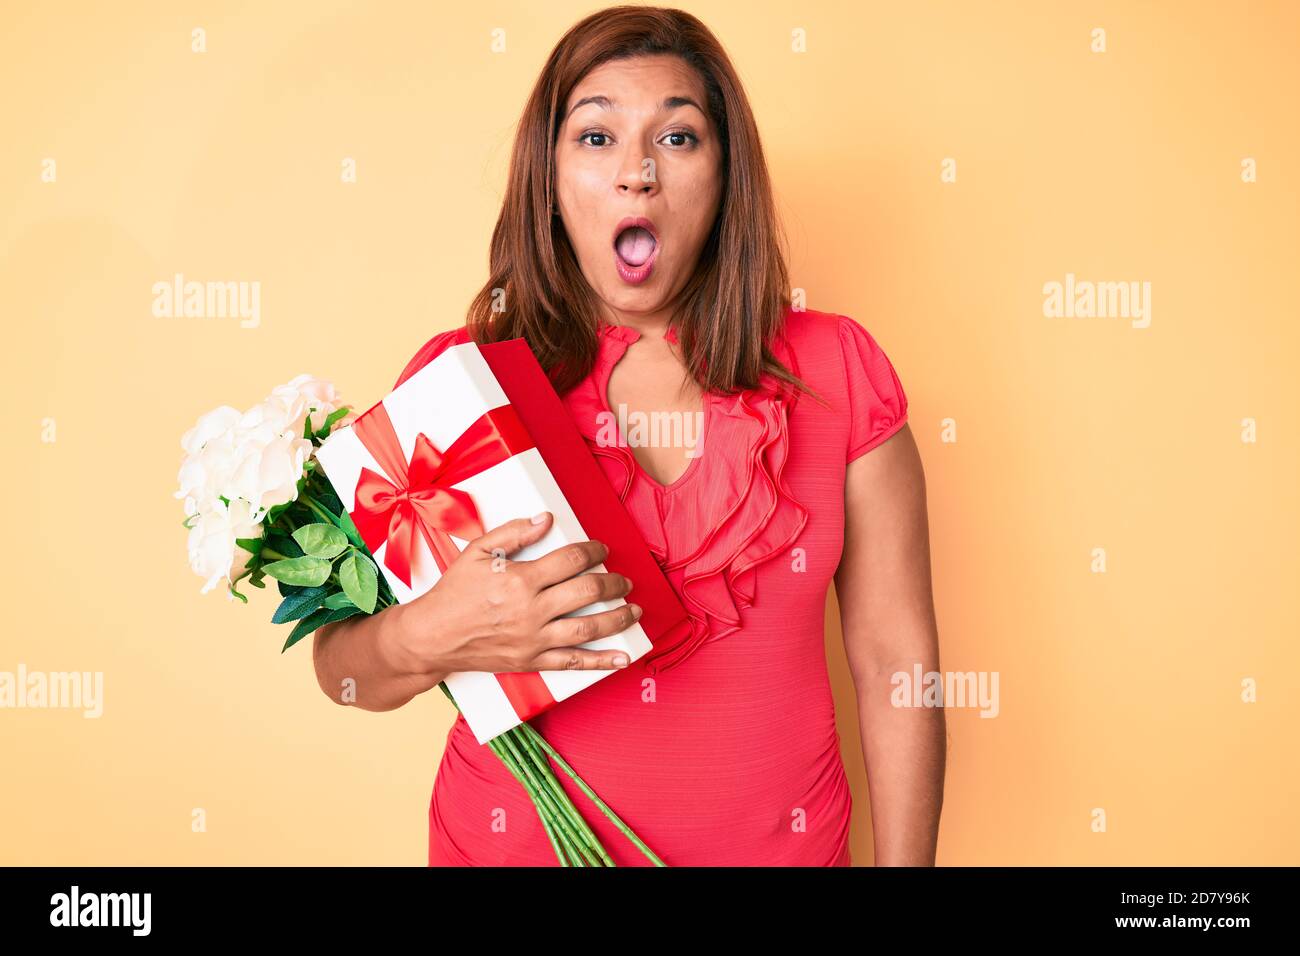 Mittleres Alter Brünette Frau hält Jahrestag Geschenk und Blumenstrauß verängstigt und erstaunt mit offenem Mund für Überraschung, Unglauben Gesicht Stockfoto